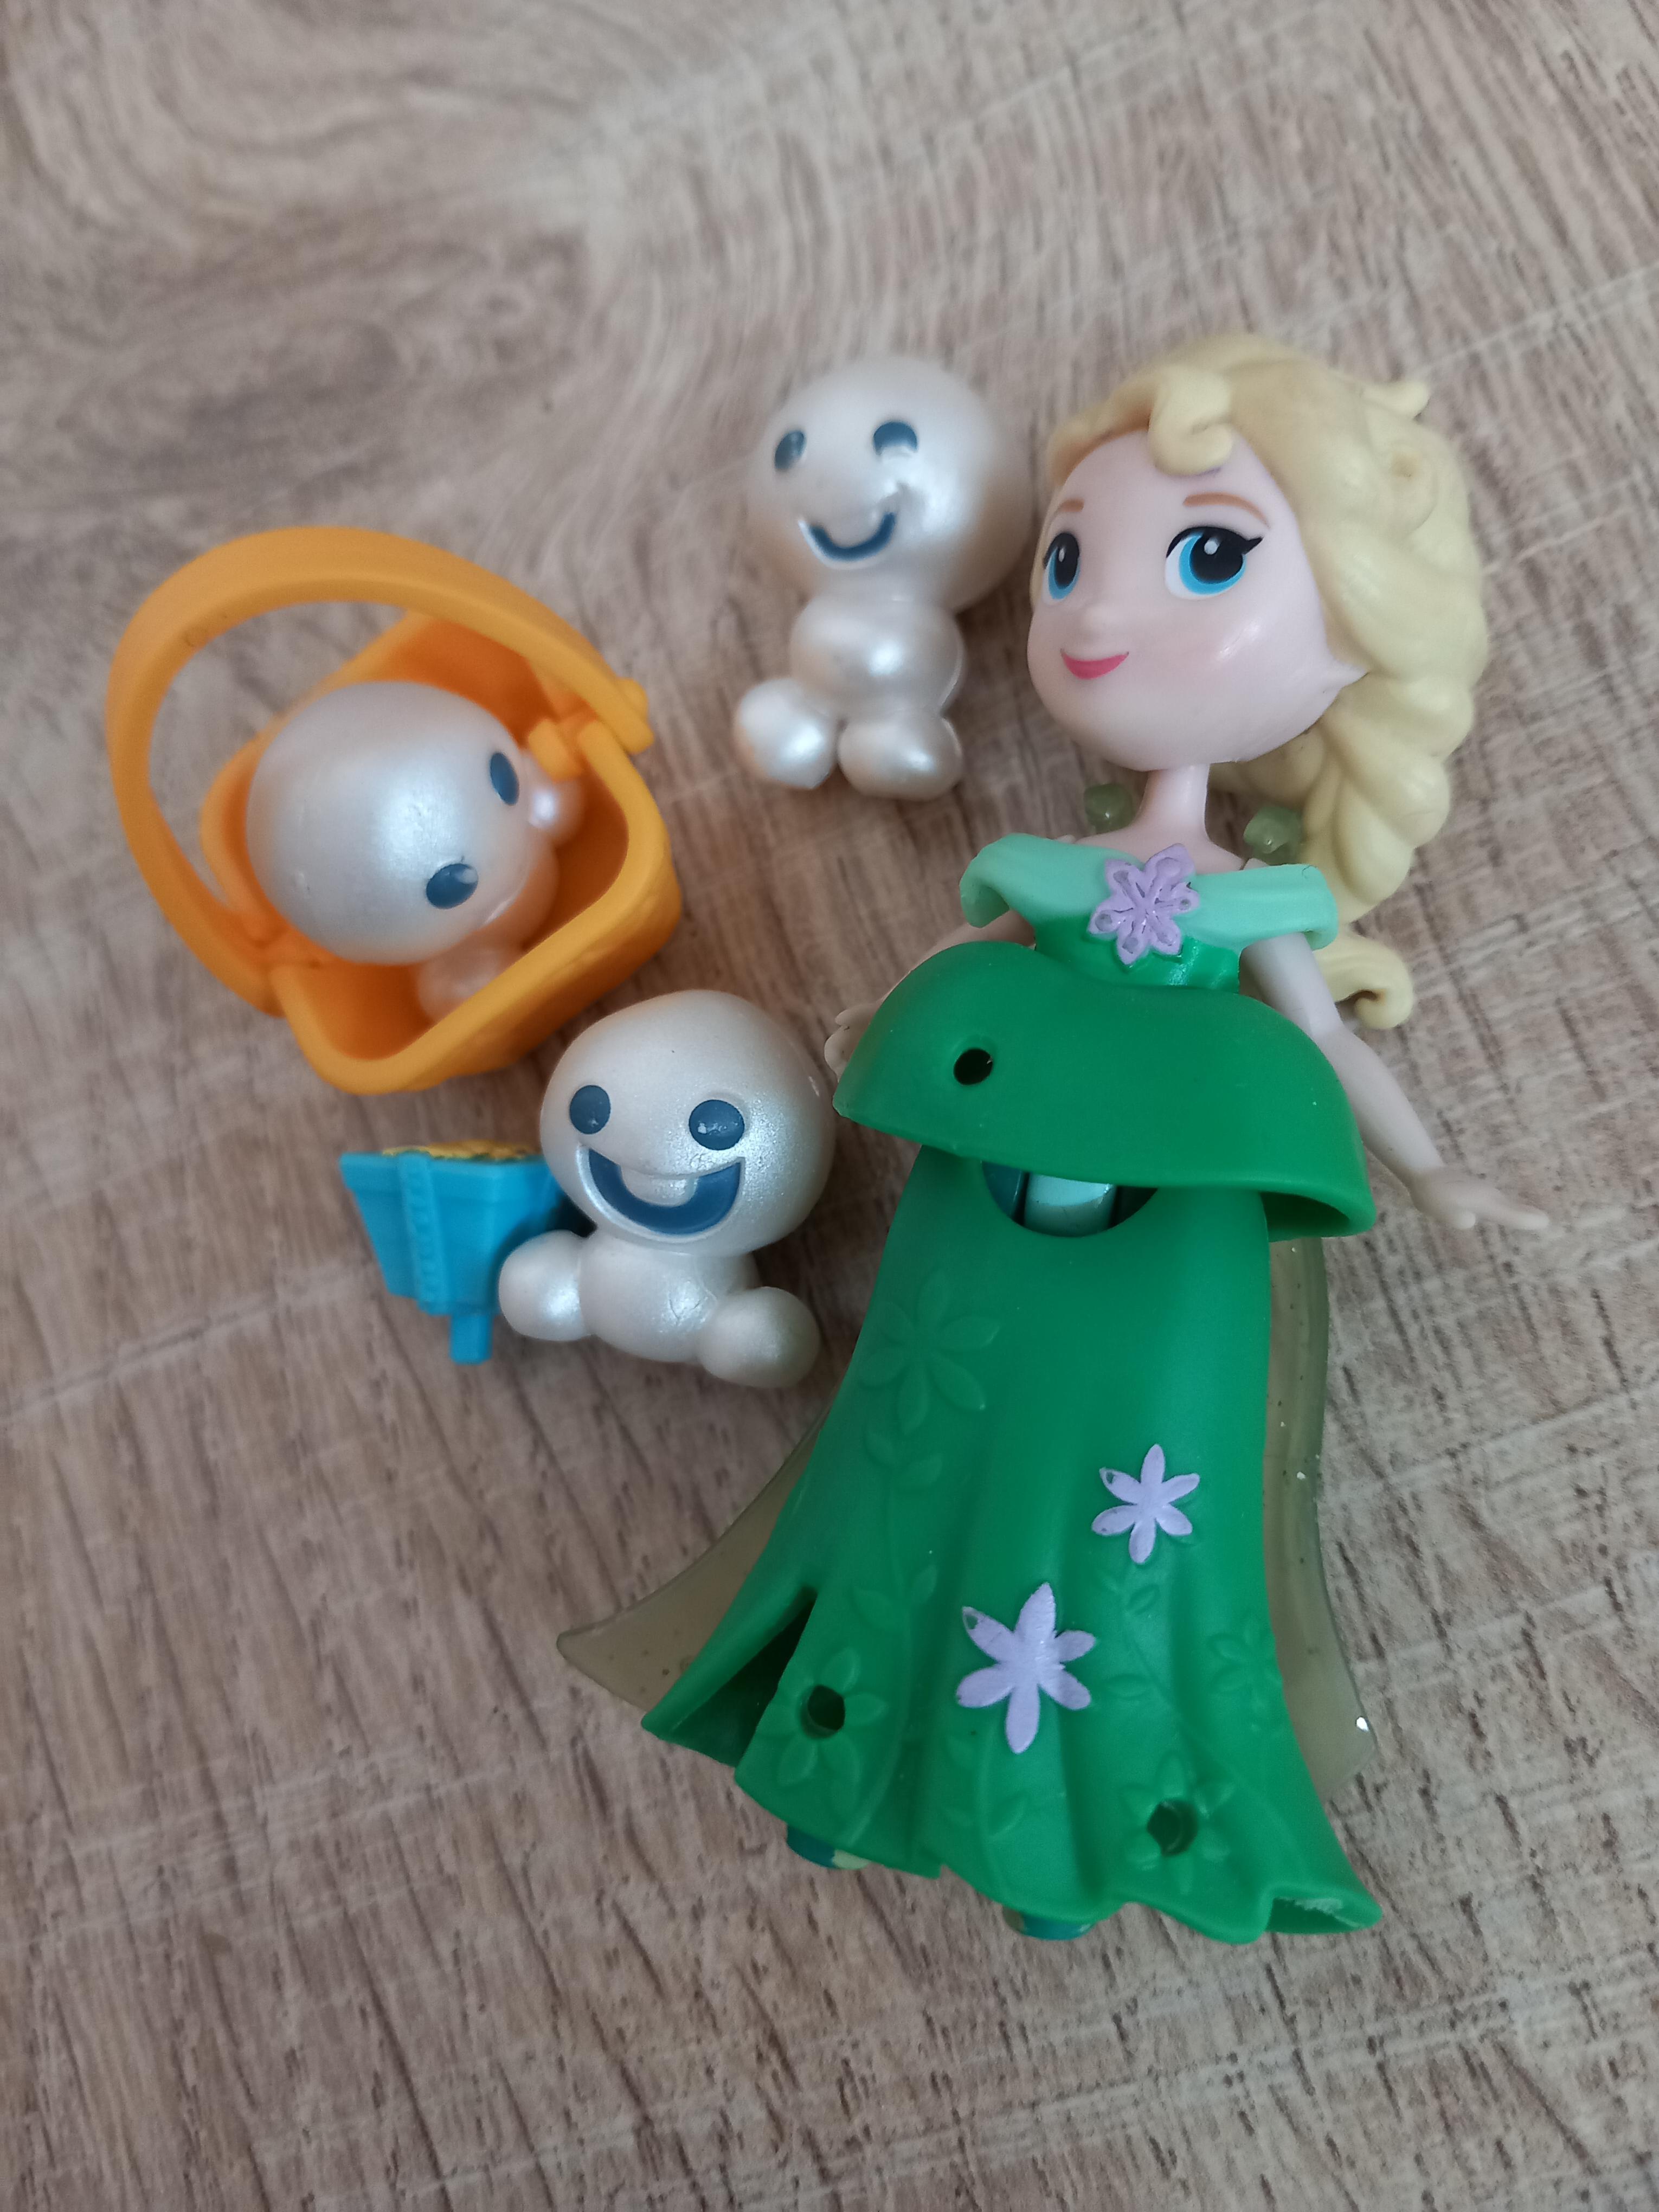 troc de troc Ŕeservé petites figurines fille princesses et chatons image 1